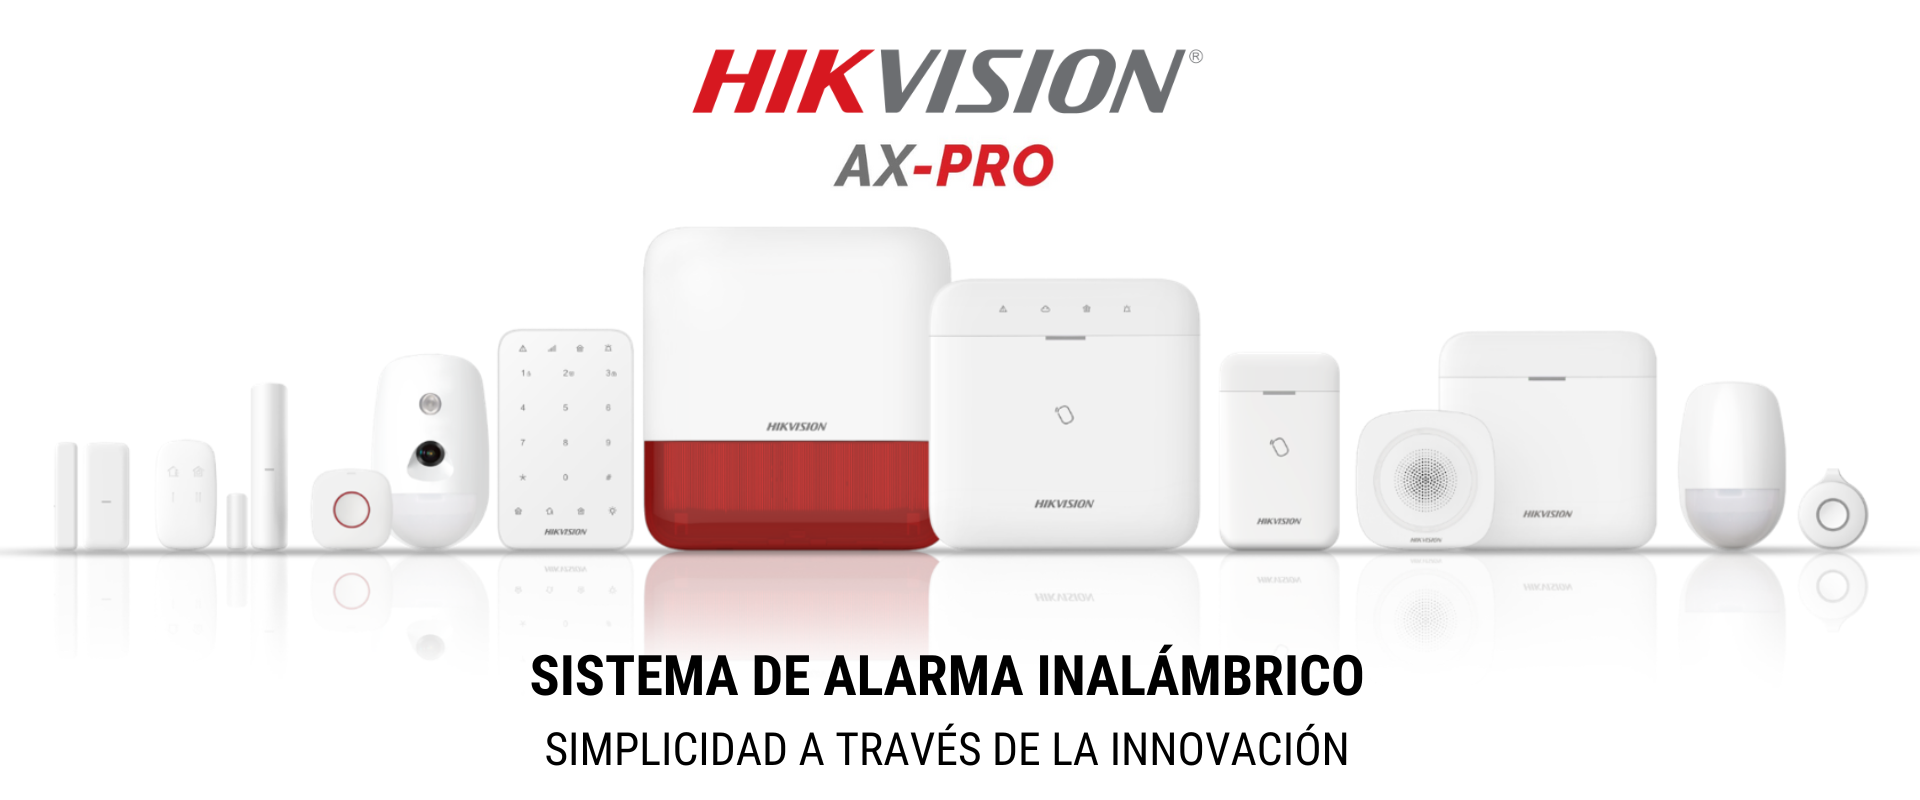 Sistema de alarma inalámbrico HikVision AX-PRO